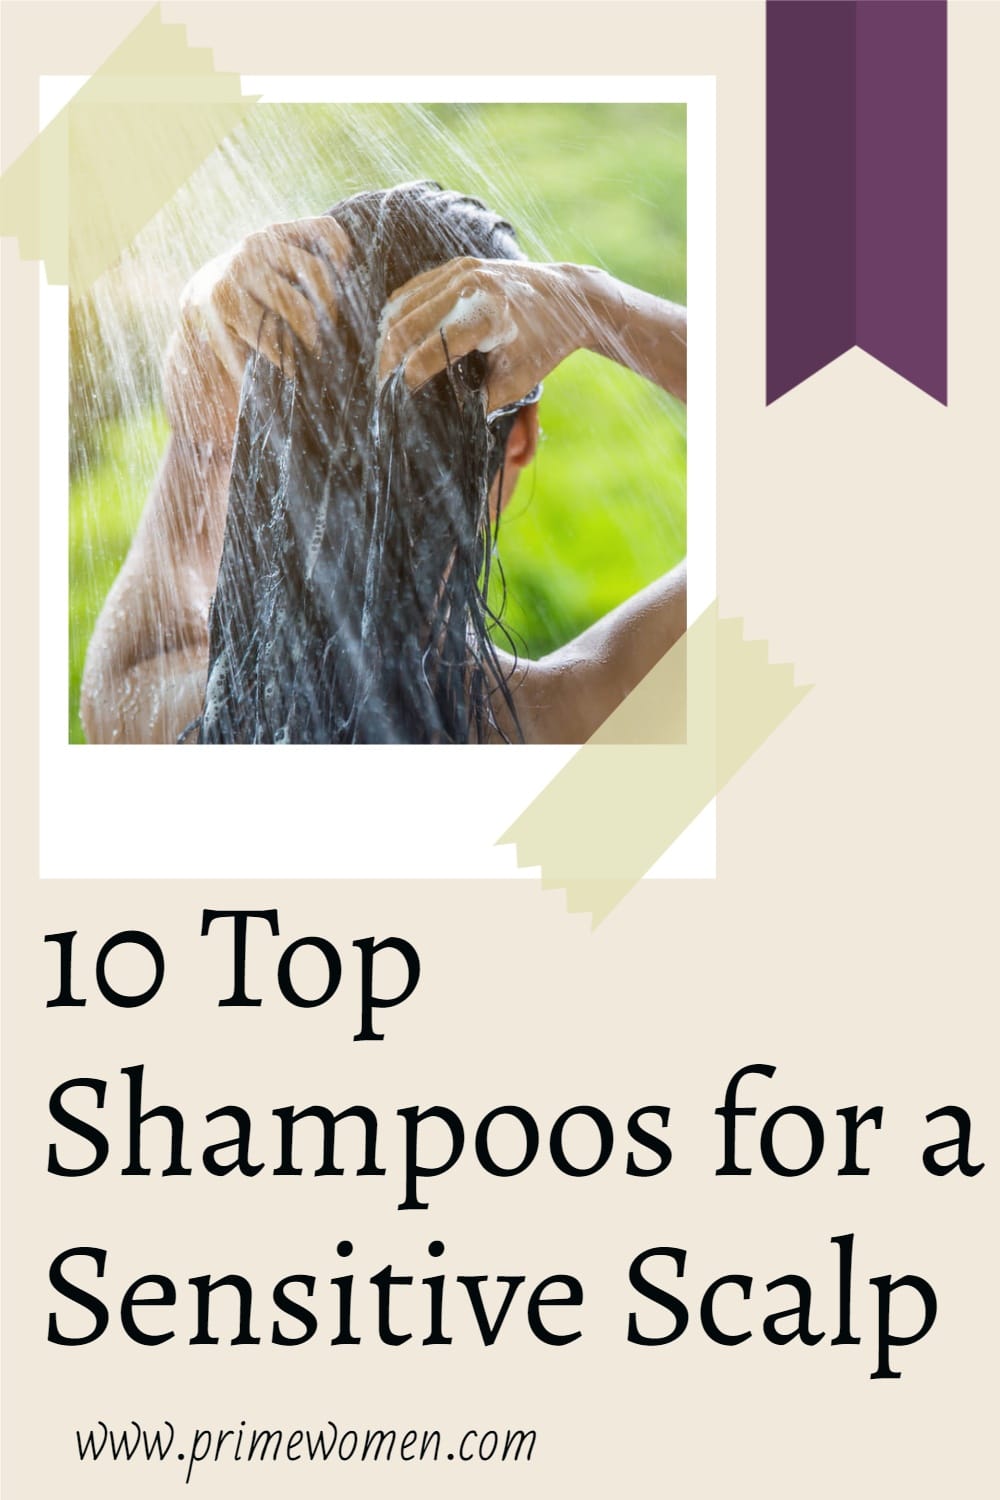 10-Top-Shampoos-for-a-Sensitive-Scalp